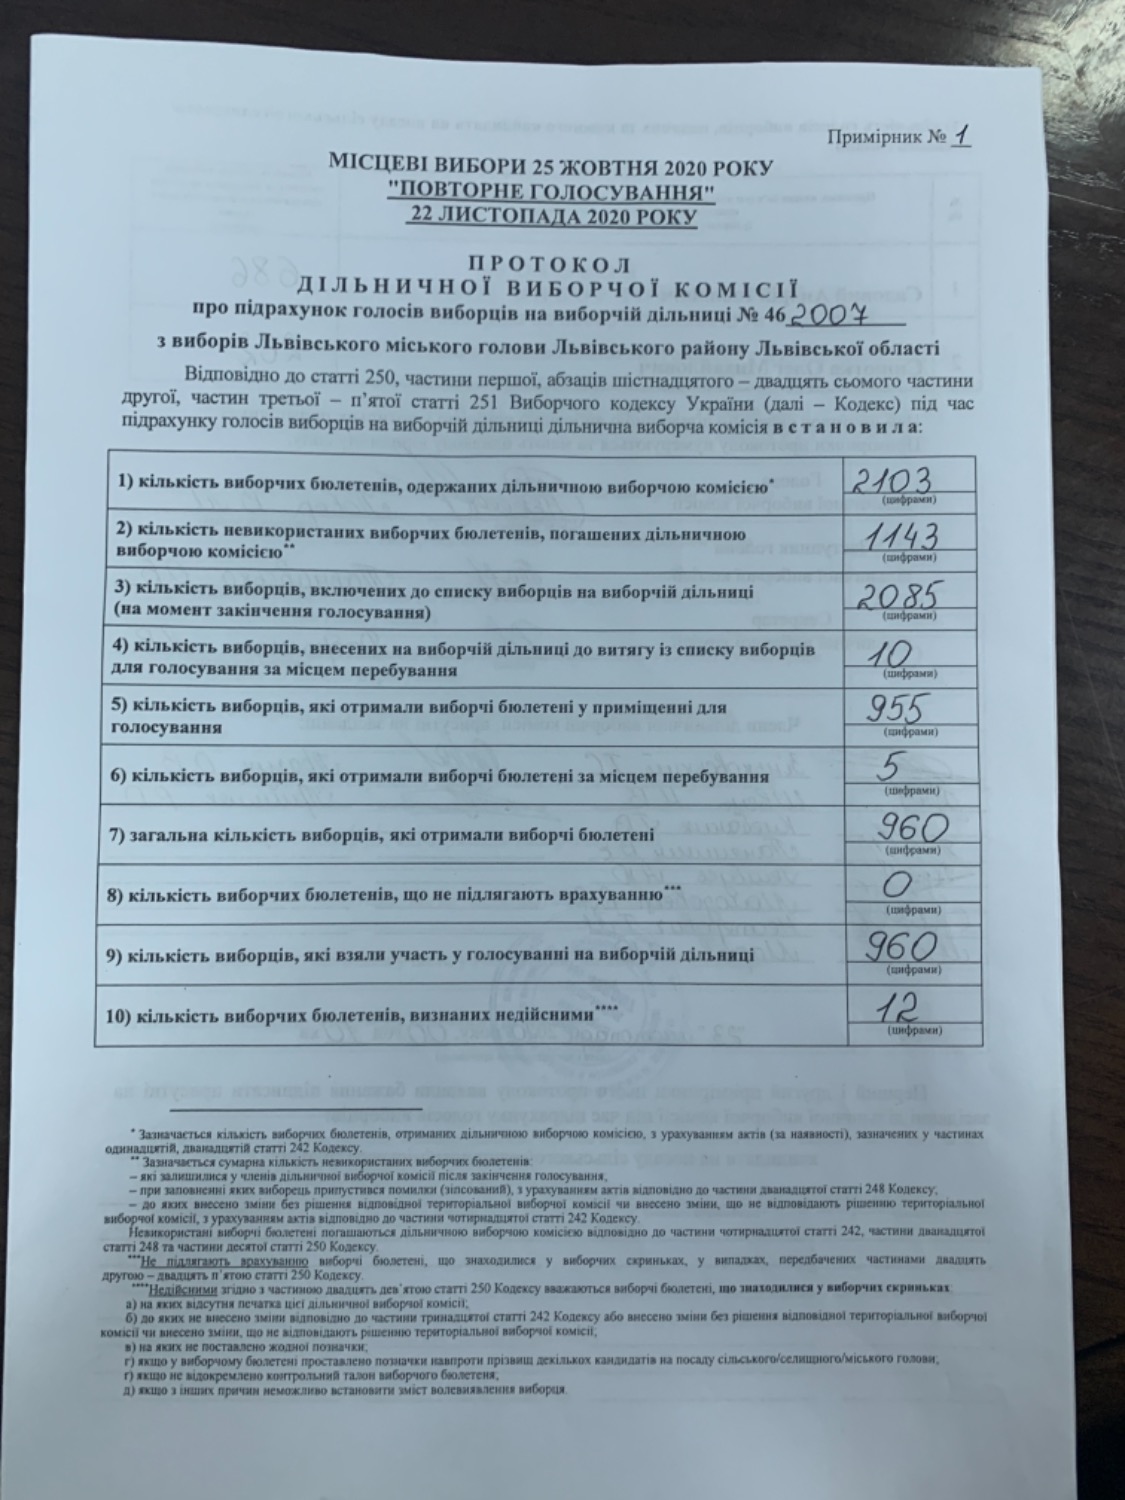 Протокол результатів голосування на виборчій дільниці № 462007